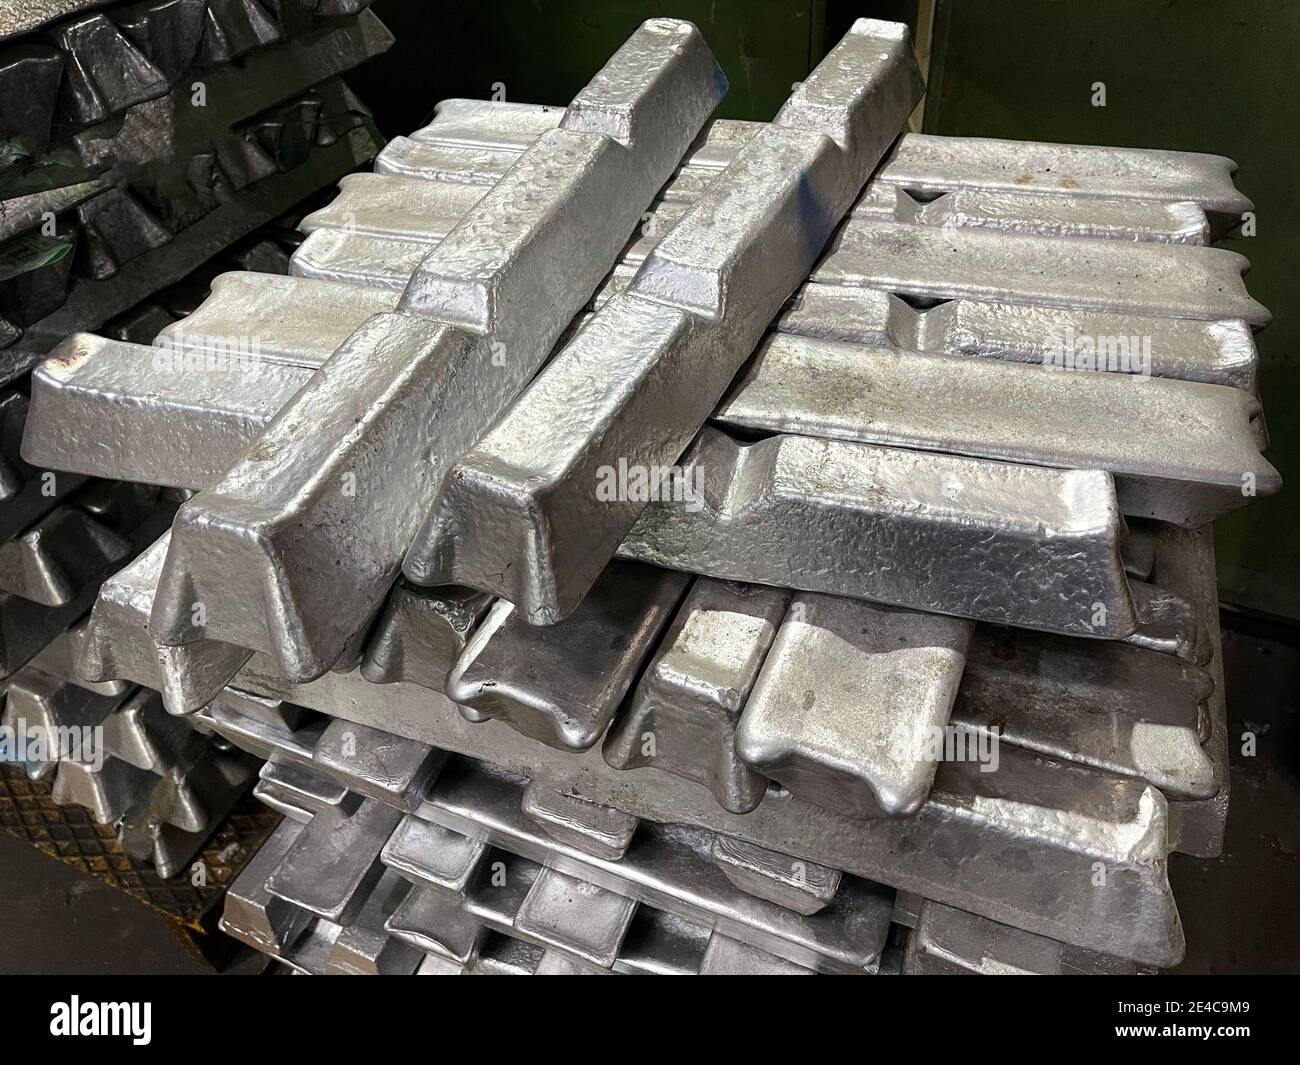 Lingotti alluminio immagini e fotografie stock ad alta risoluzione - Alamy